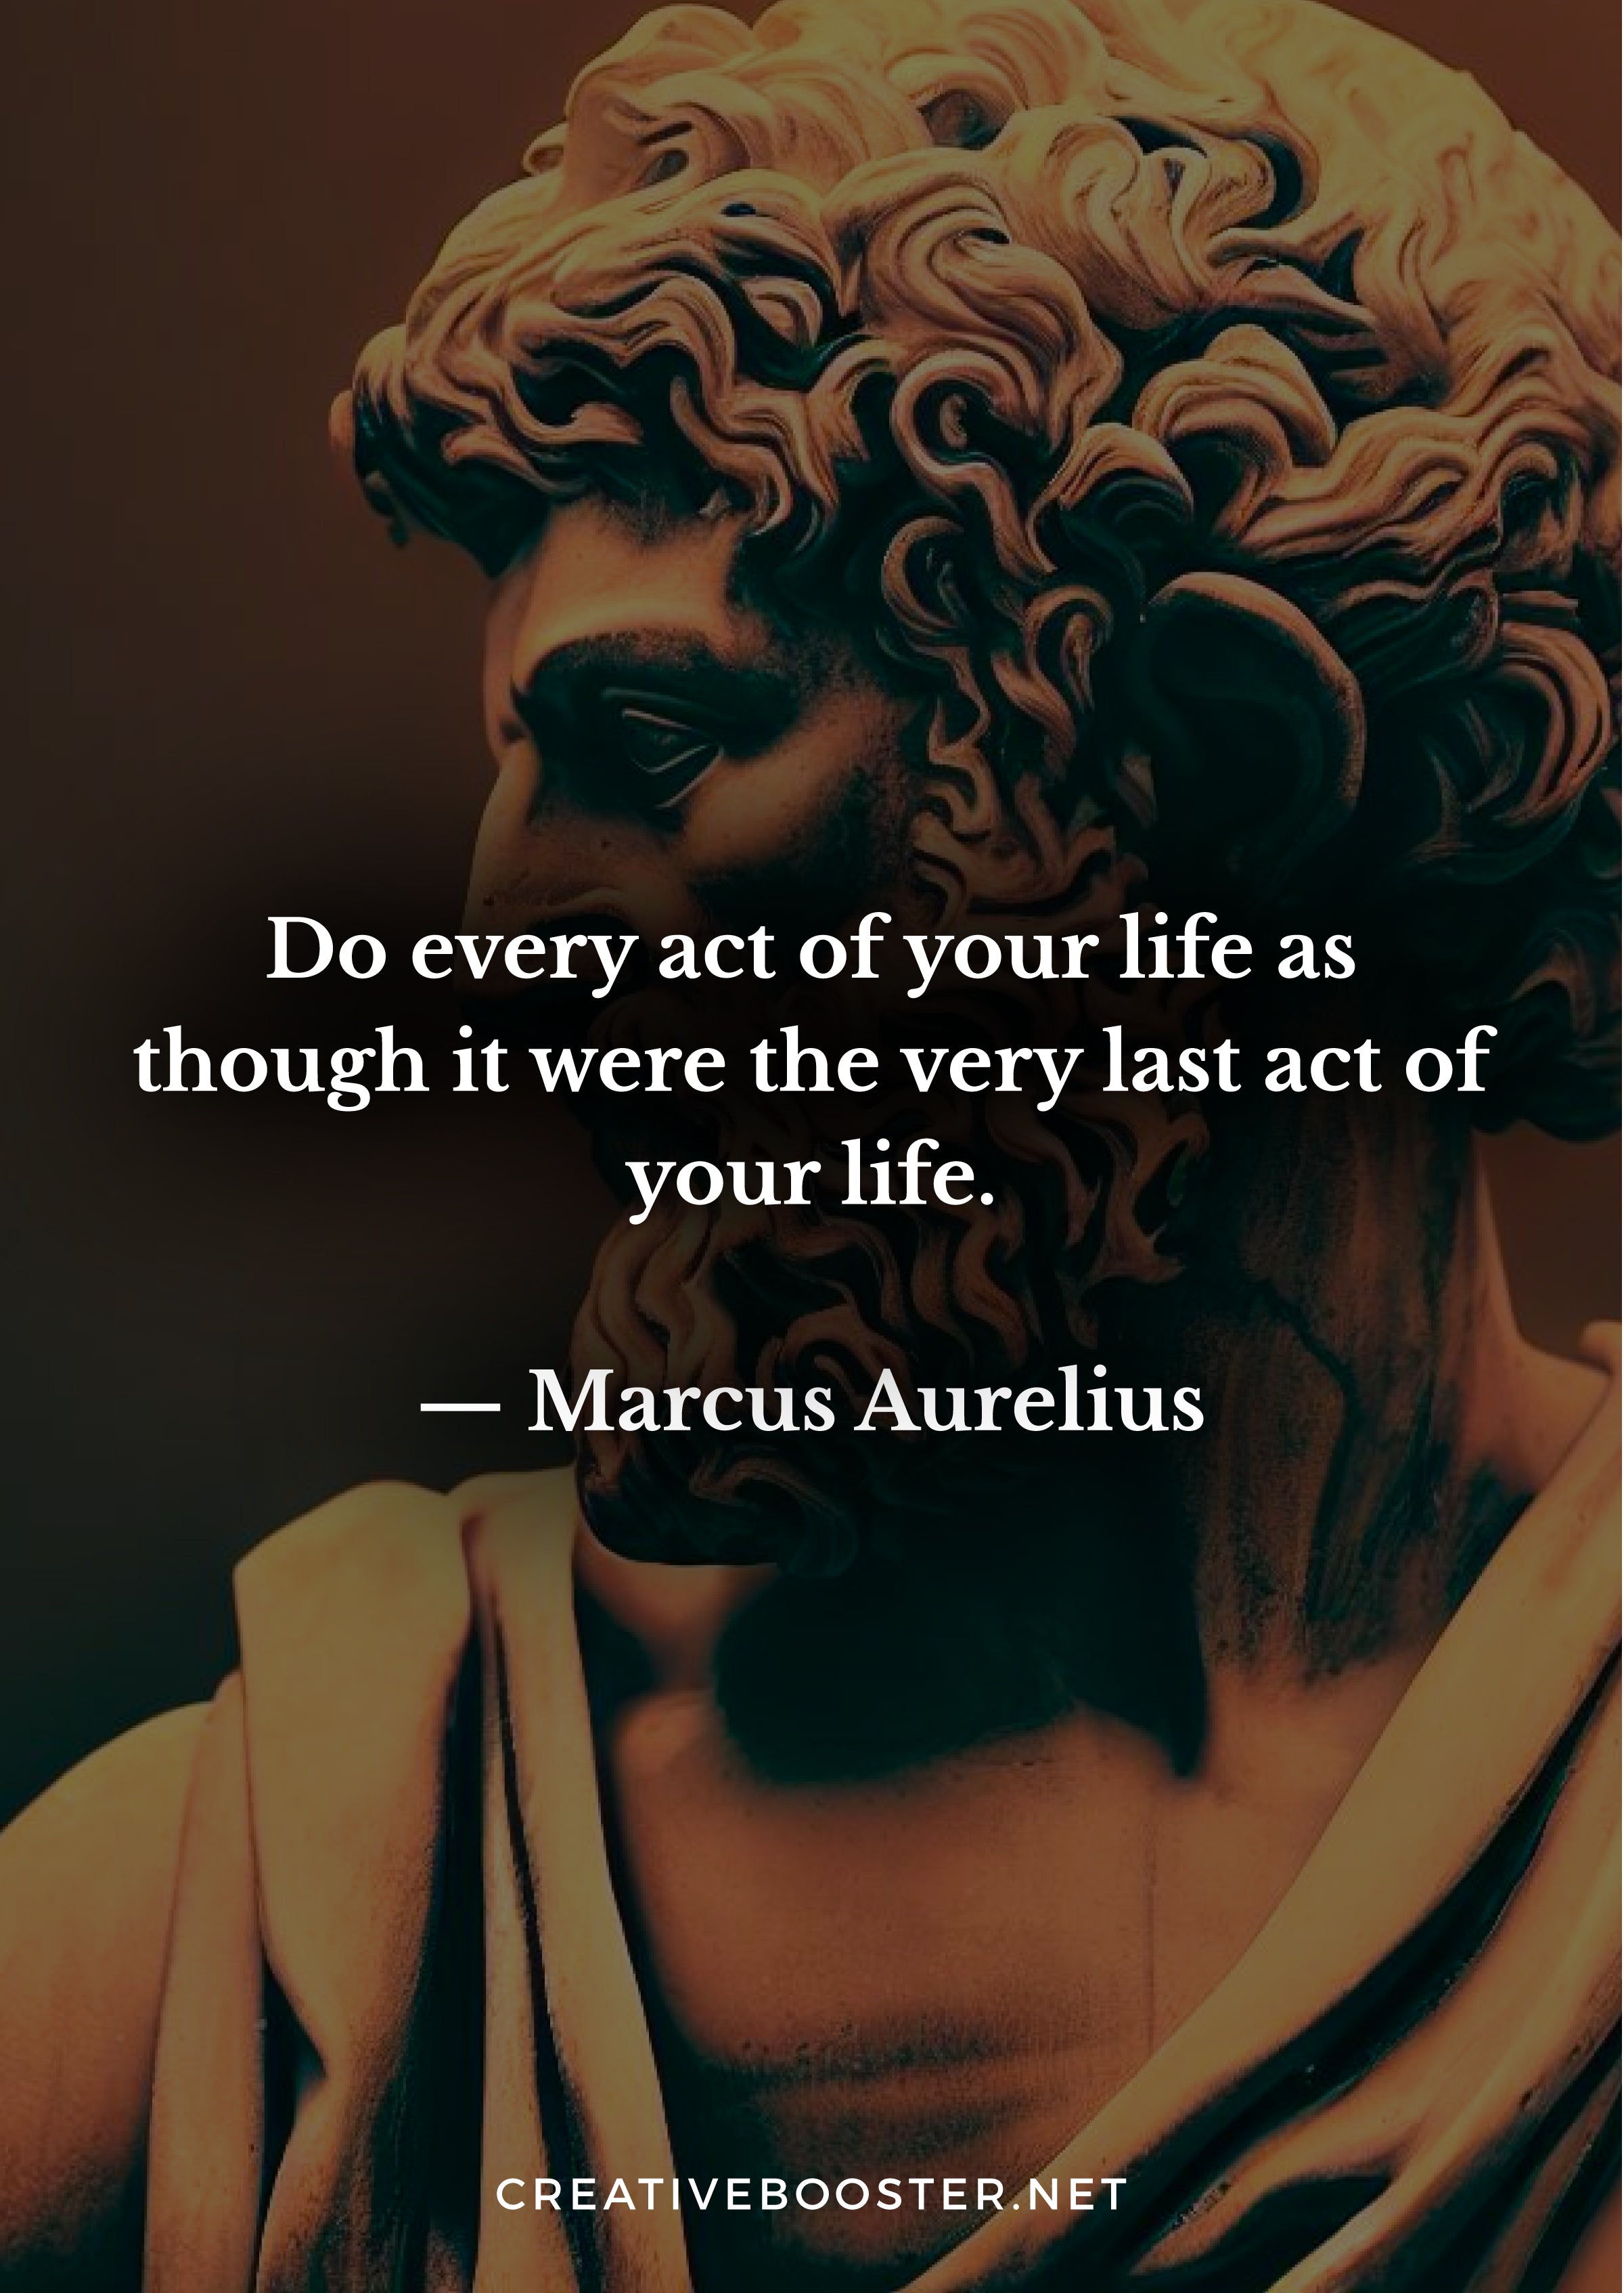 Marcus-Aurelius-Quotes-About-Death